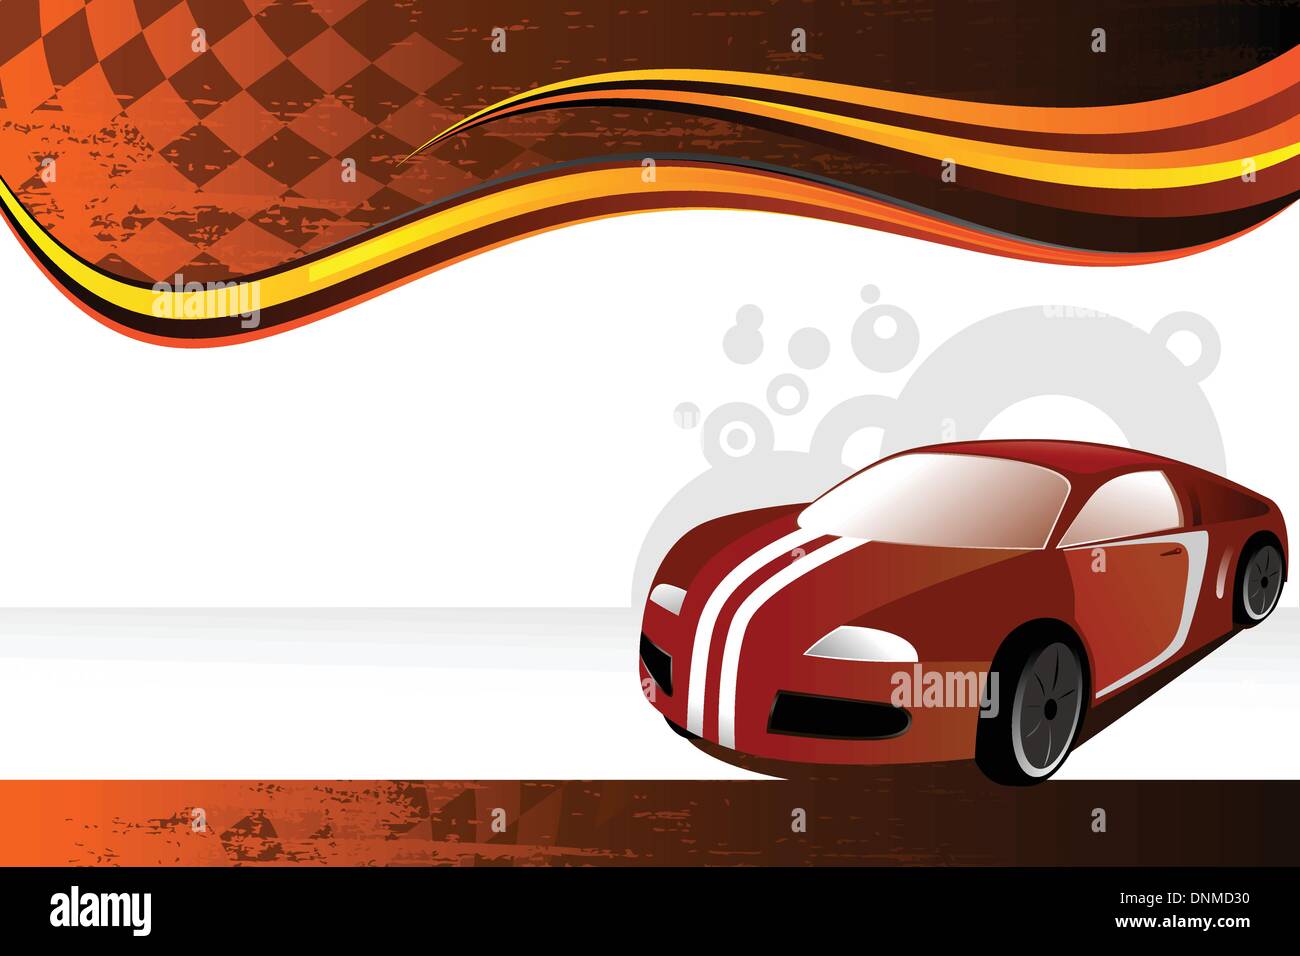 Eine Vektor-Illustration eines Automobils oder Auto banner Stock Vektor